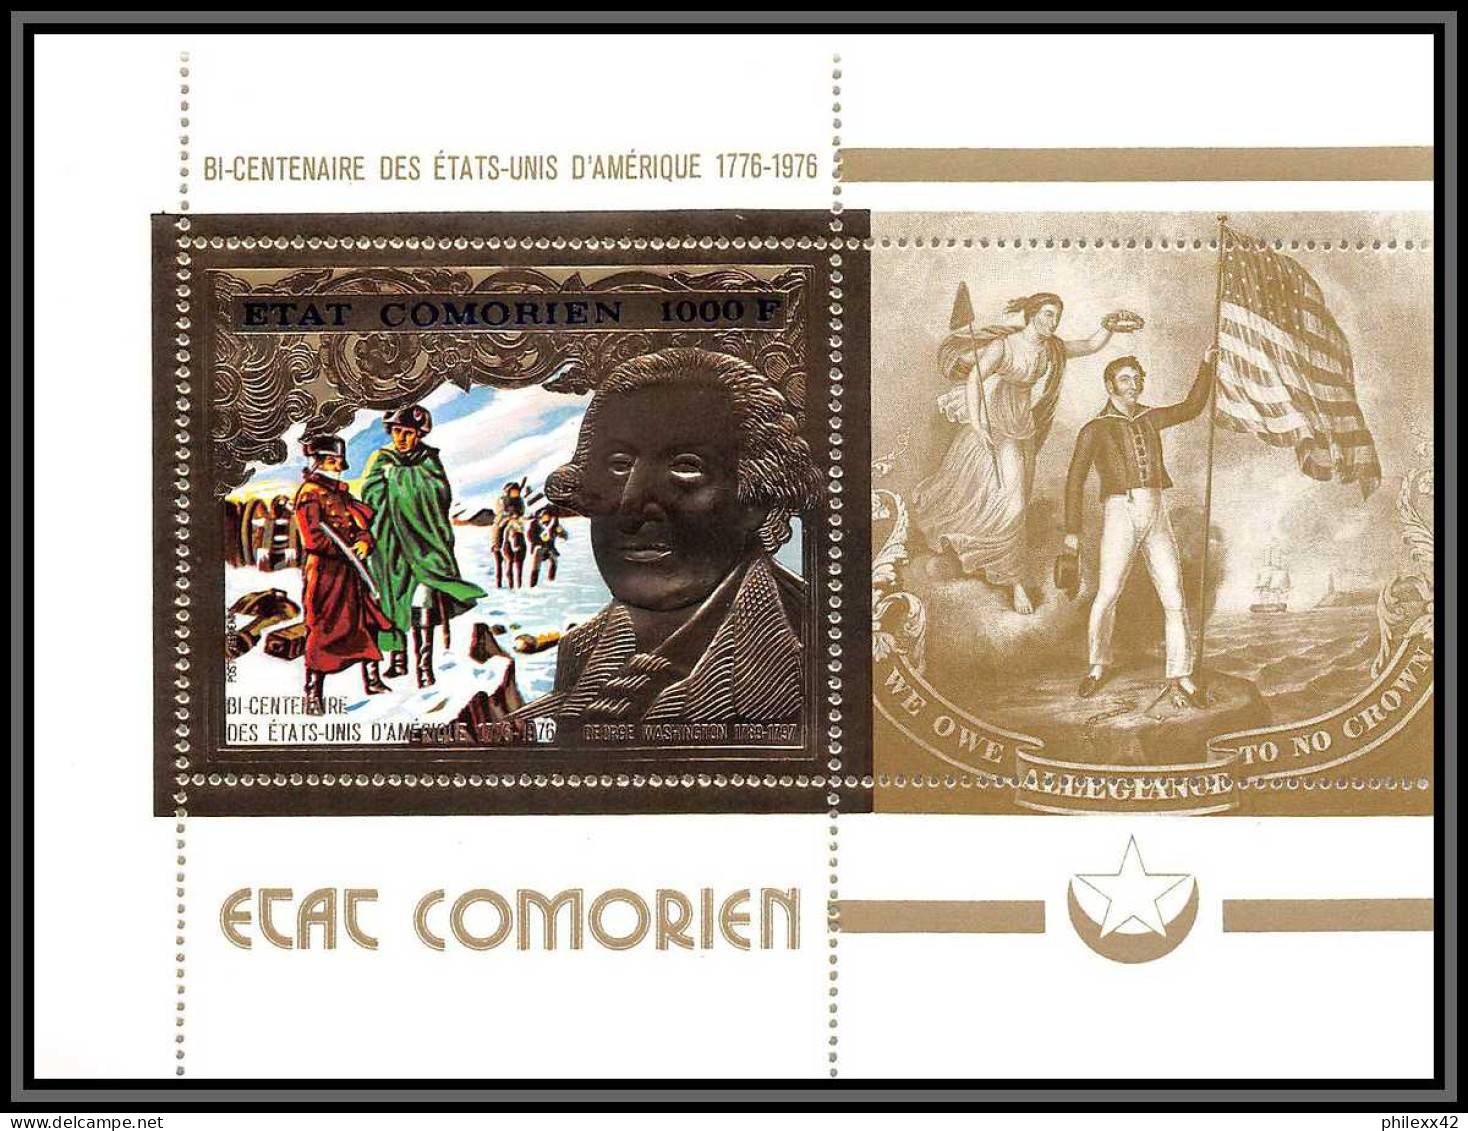 85738a N°18 A USA Bi-centennial Washington 1976 Comores Etat Comorien Timbres OR Gold Stamps ** MNH  - Indépendance USA